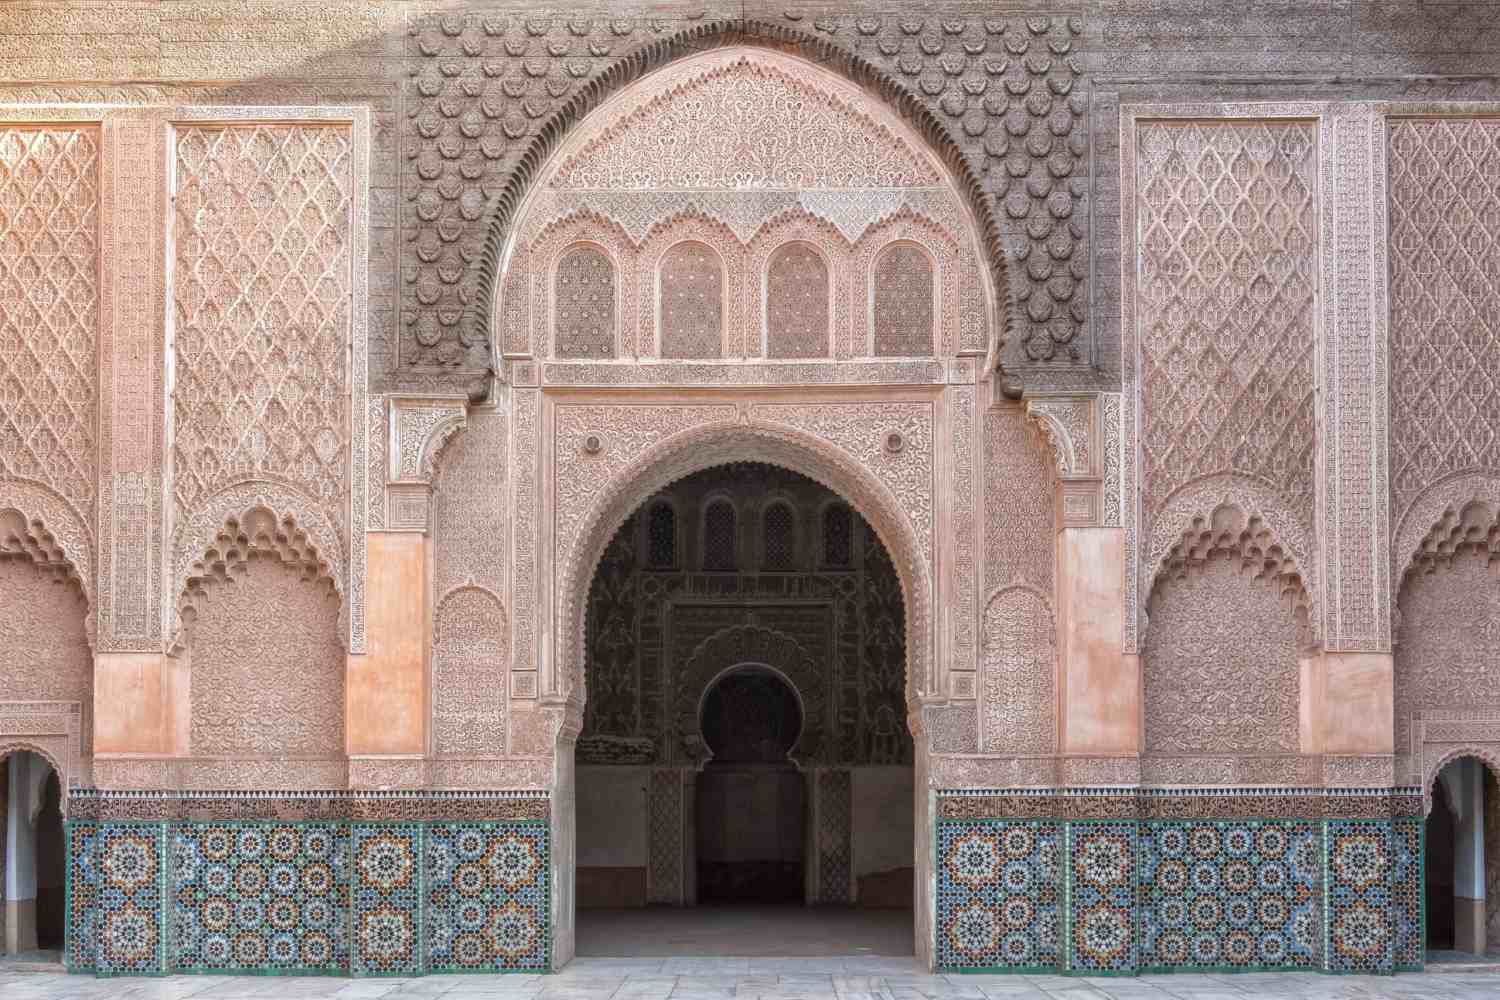 Riad El Fenn Marrakech - Morocco